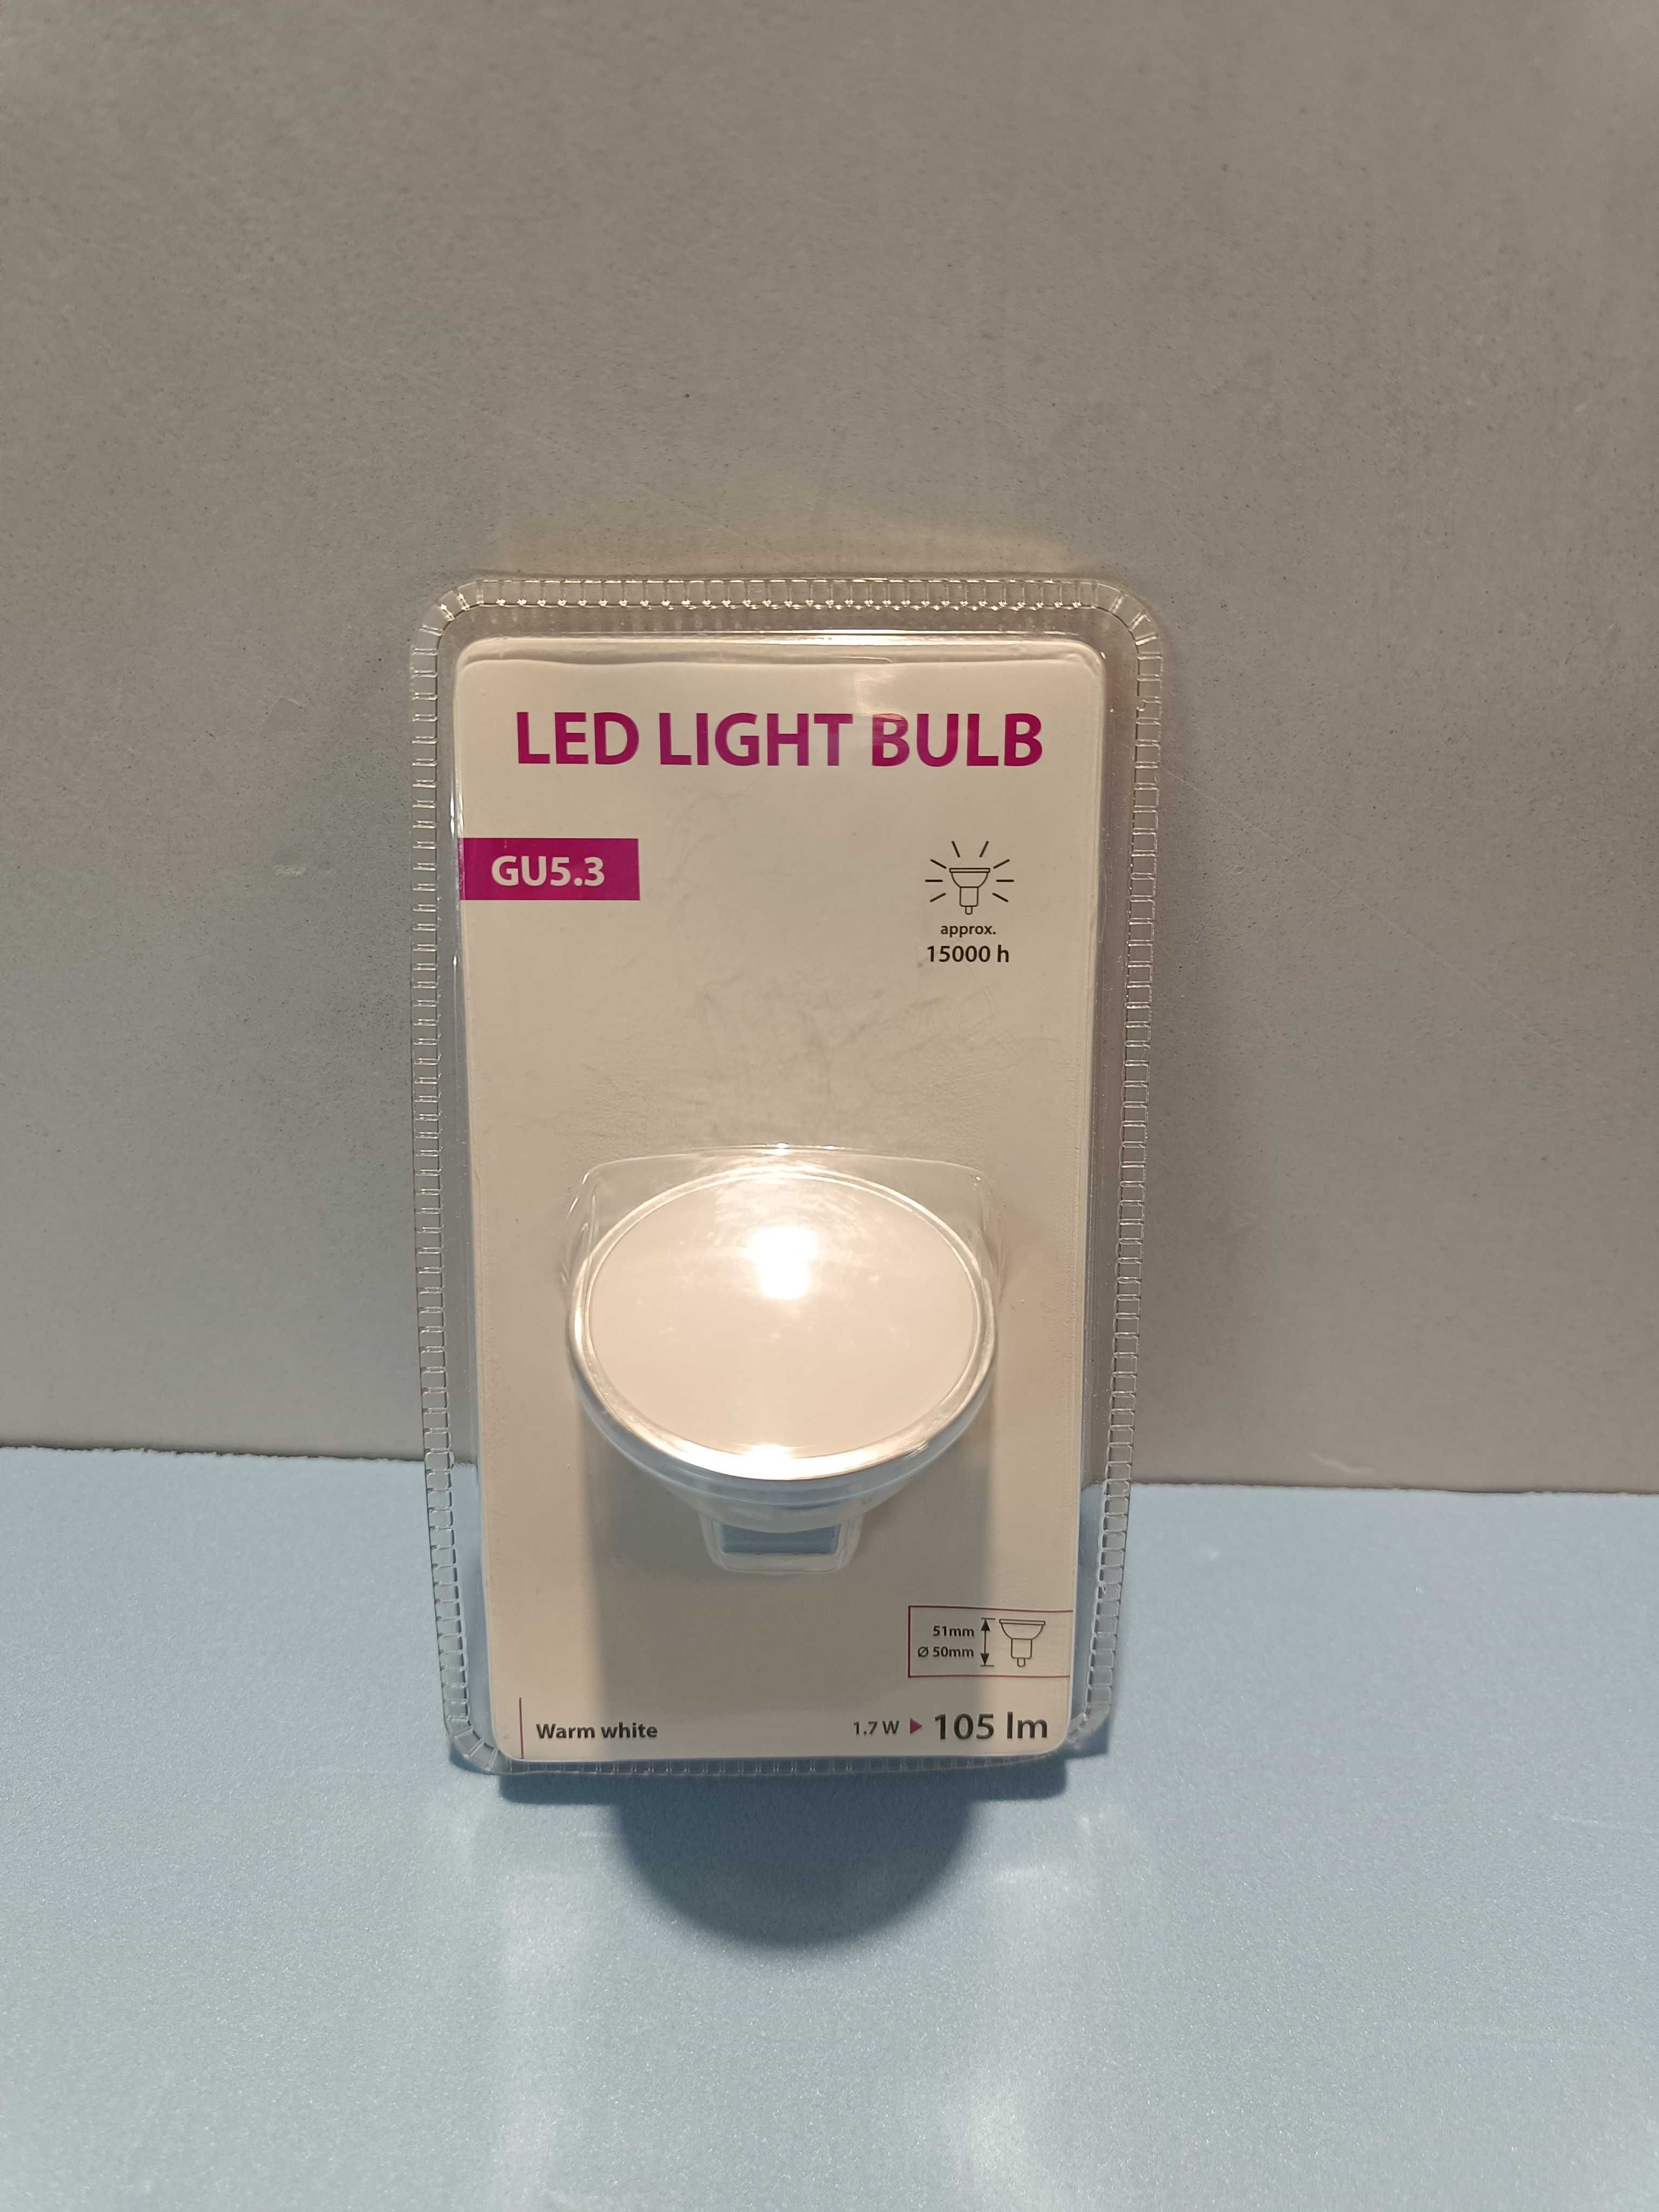 LED Light Bulb GU5.3